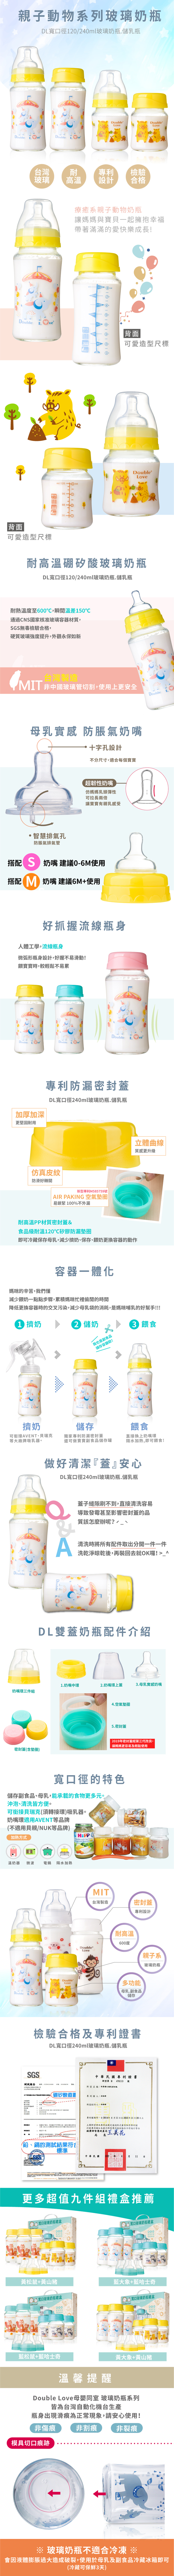 一瓶雙蓋台灣 玻璃奶瓶DL寬口徑母乳儲存瓶 / 玻璃奶瓶兩用九件套禮盒 彌月禮【EA0045】